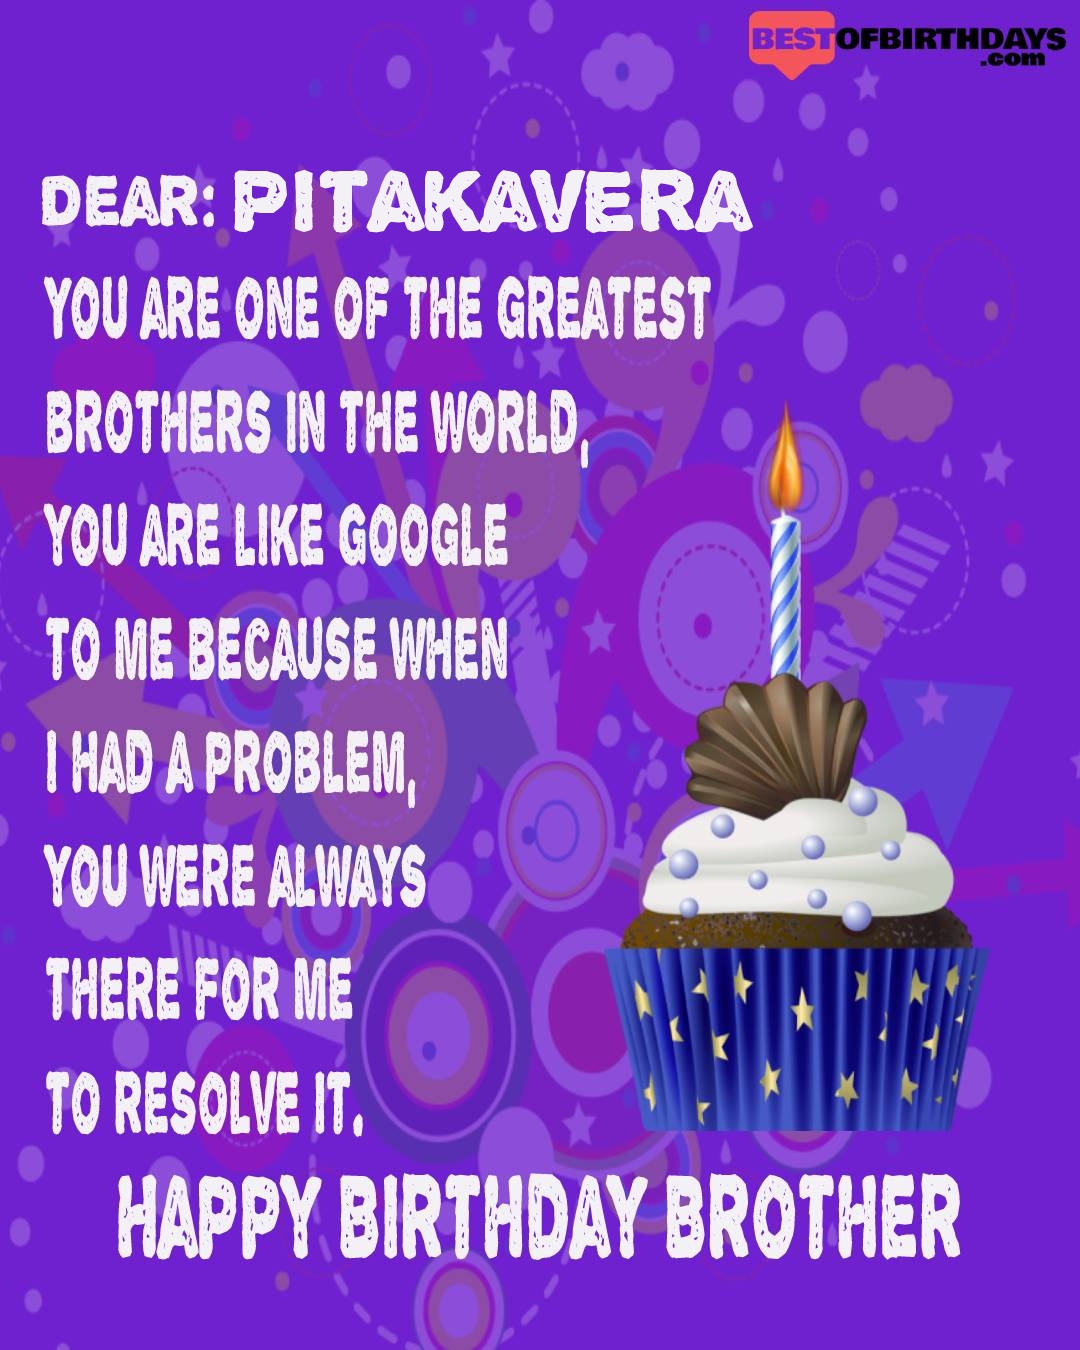 Happy birthday pitakavera bhai brother bro